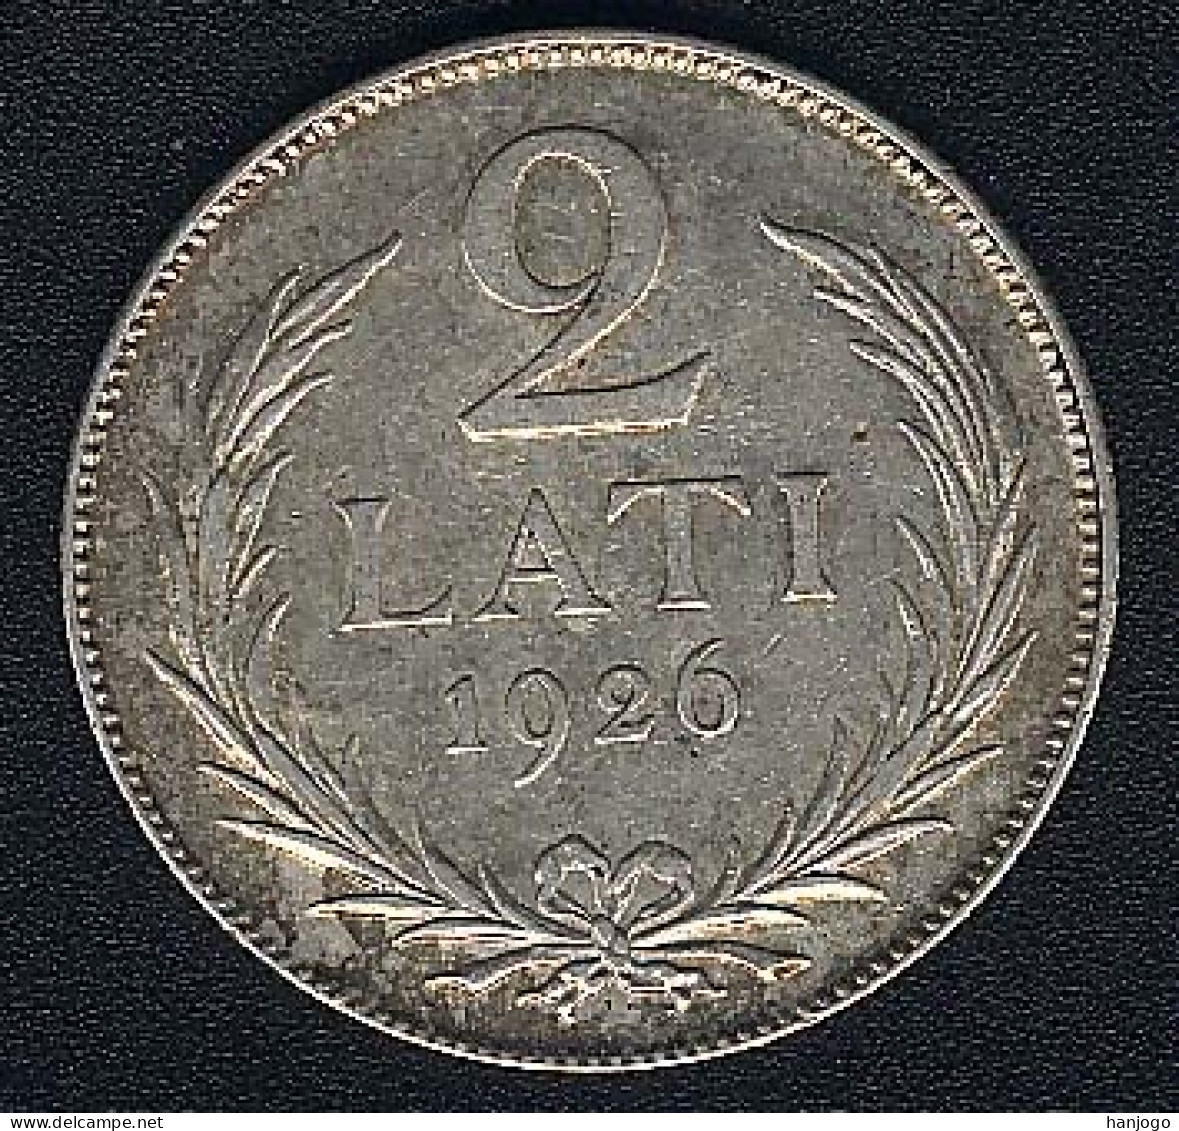 Lettland, 2 Lati 1926, Silber, XF - Lettland